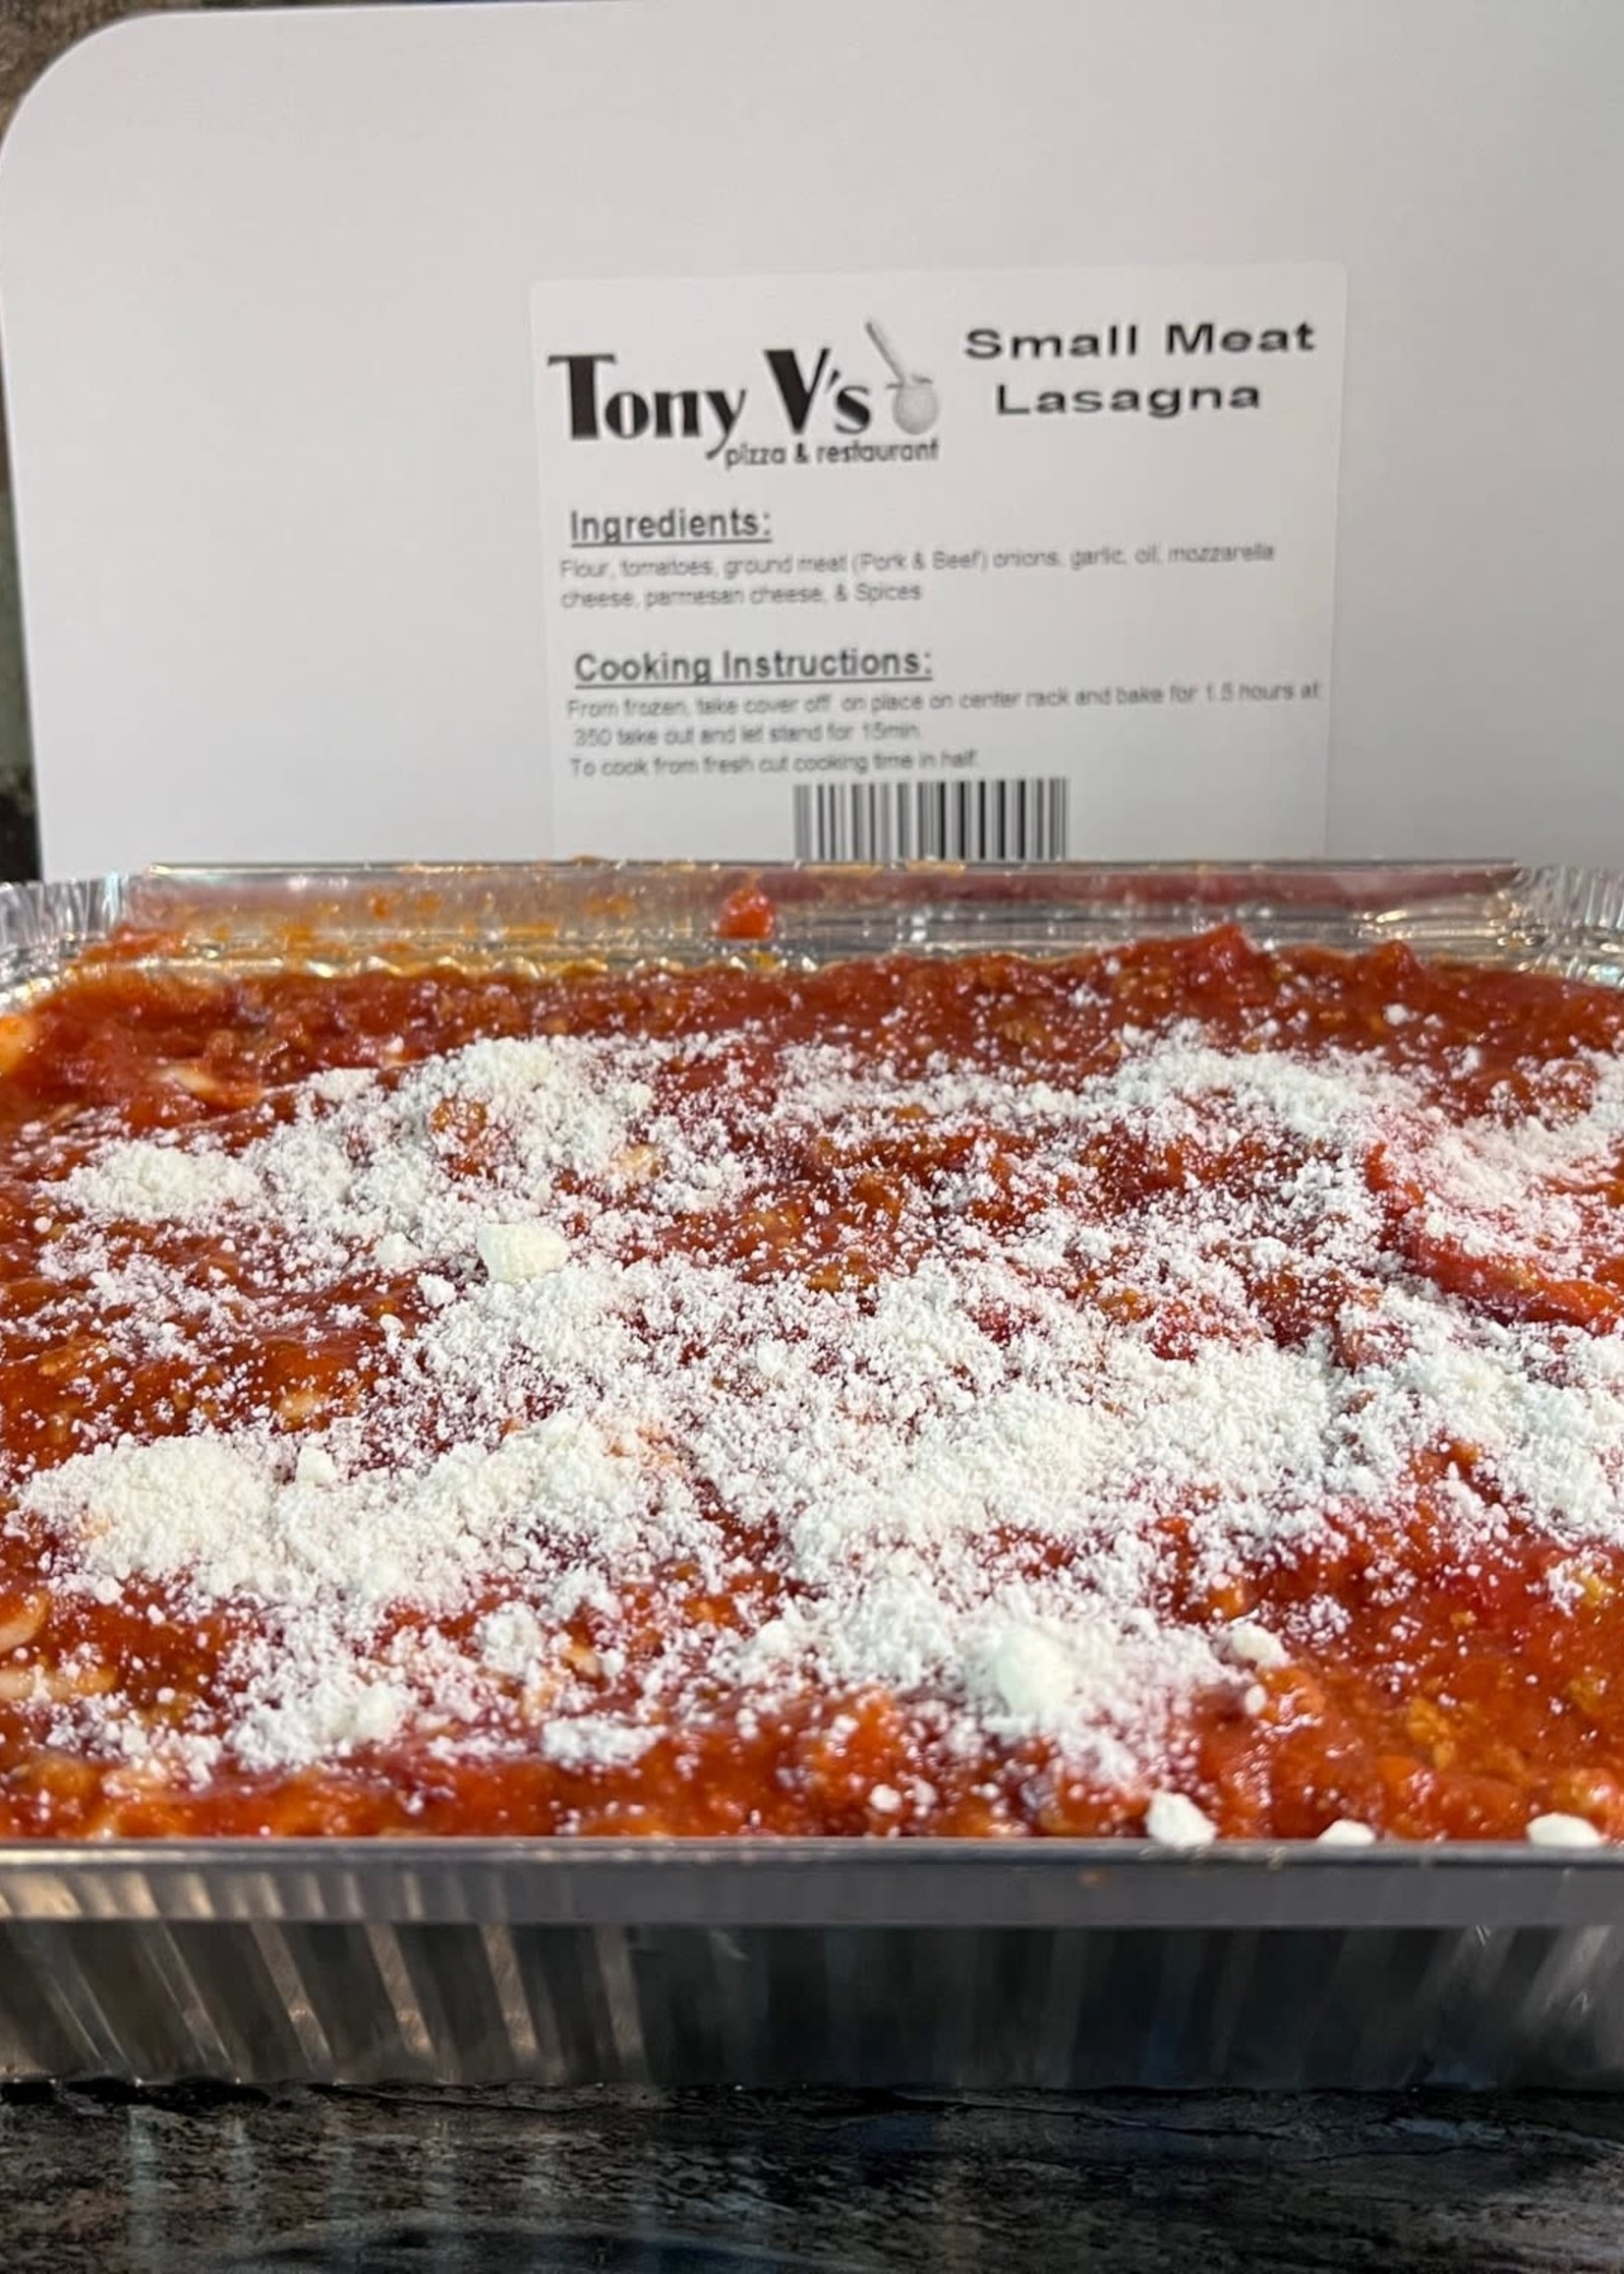 Tony Vs Pizza & Restaurant Meat Lasagna (Tony Vs)  Small